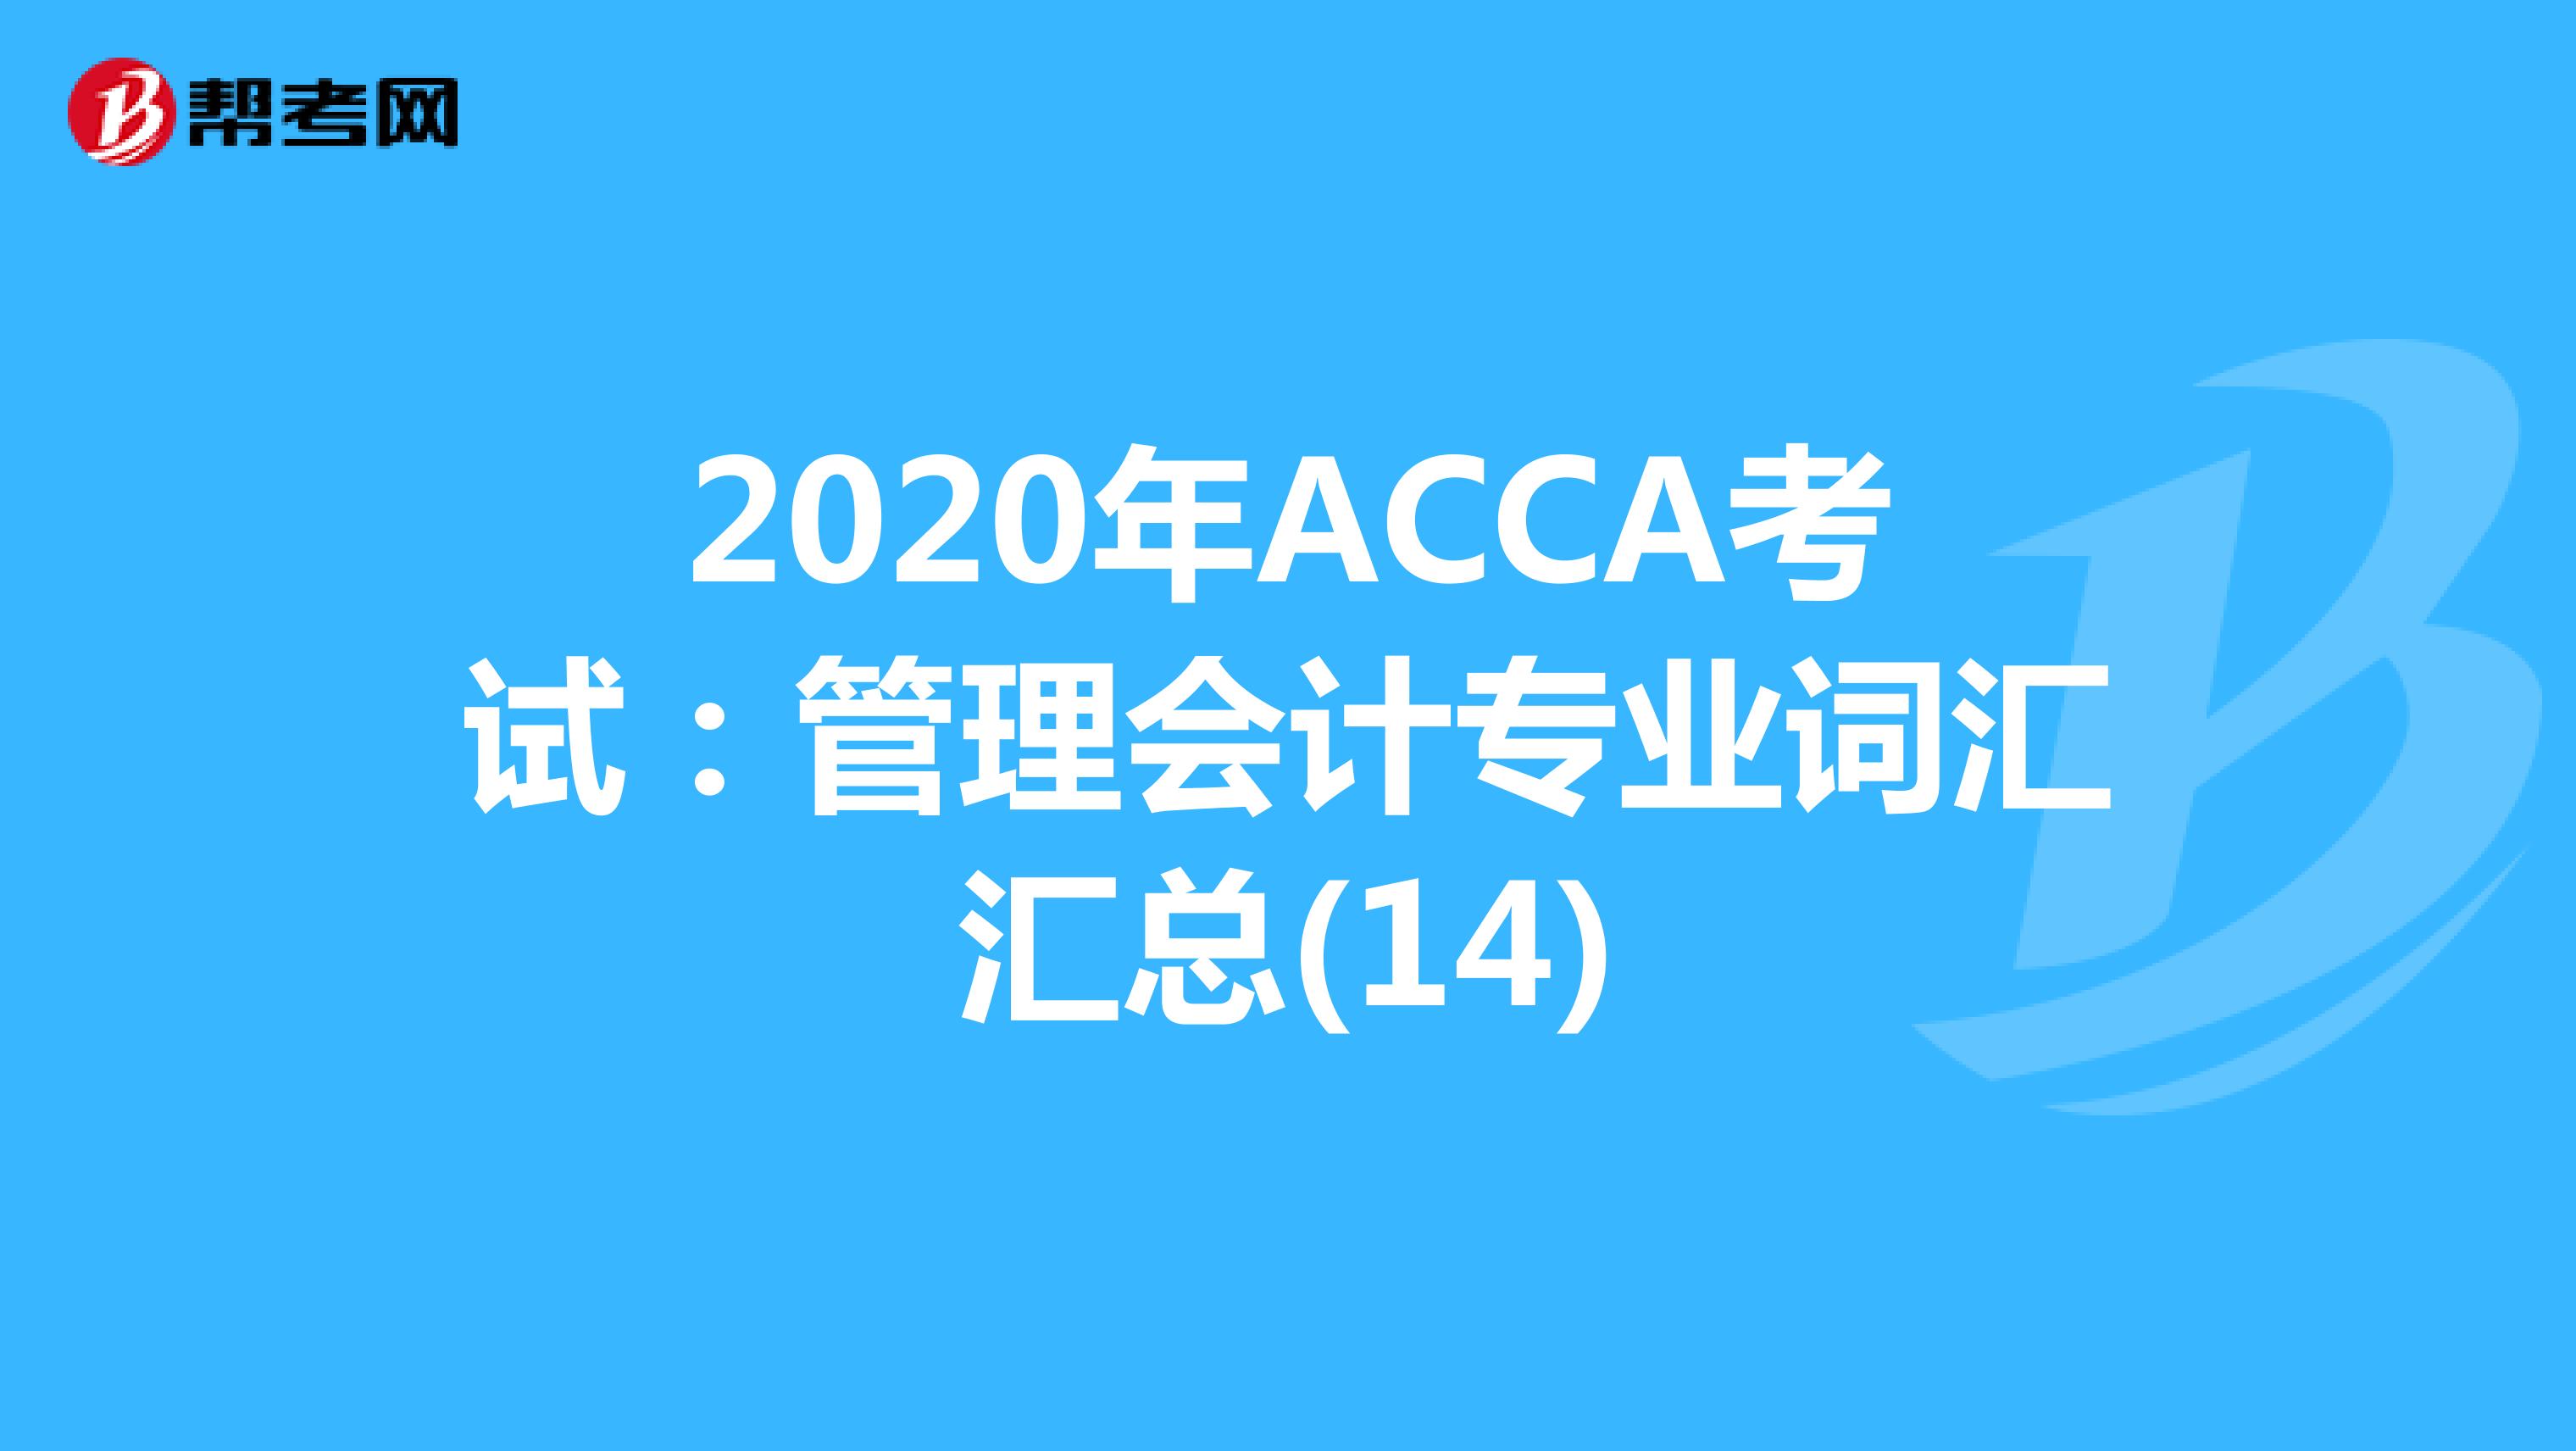 2020年ACCA考试：管理会计专业词汇汇总(14)